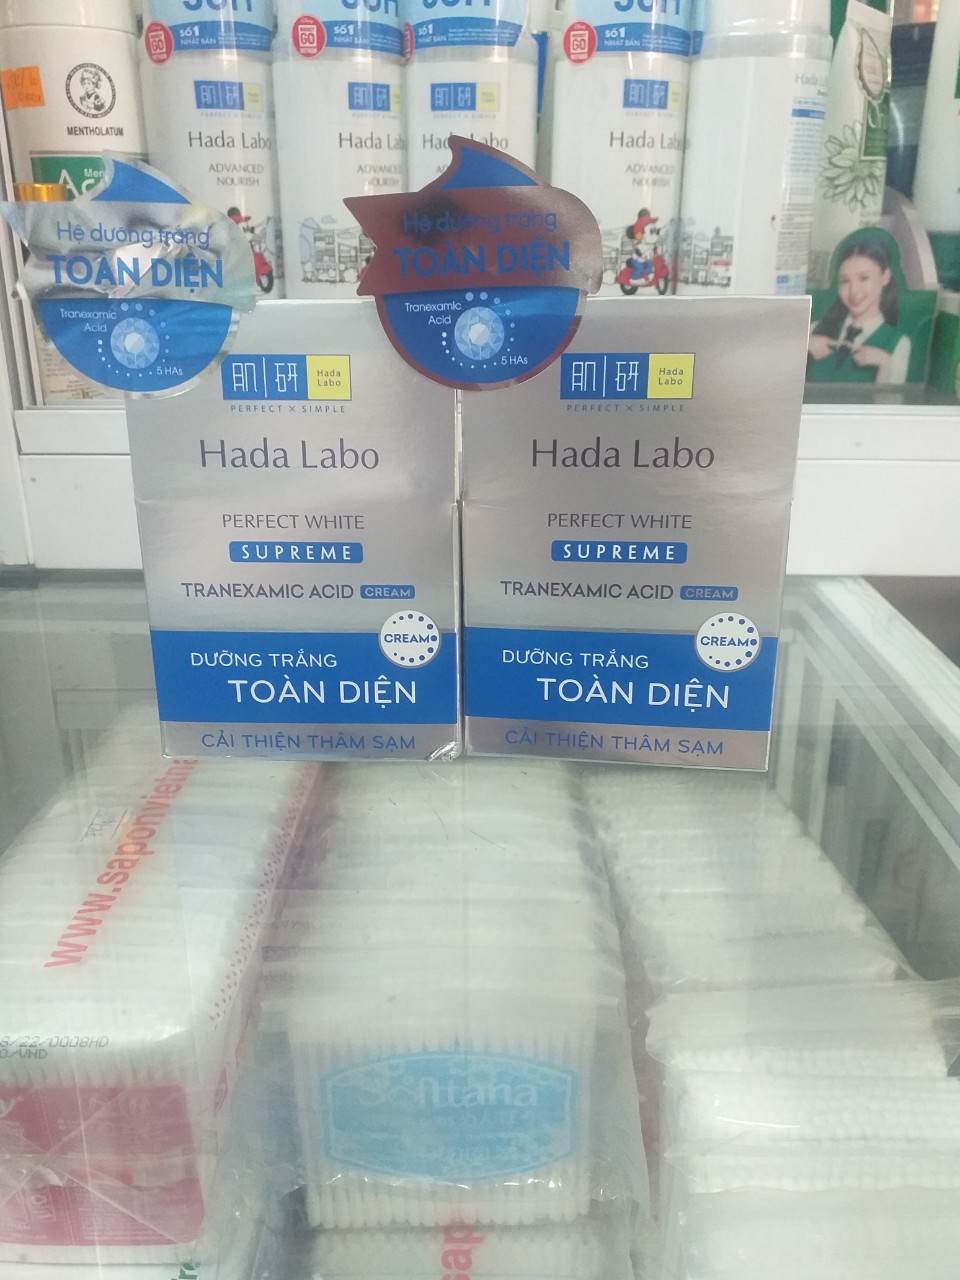 Kem dưỡng trắng Hada Labo - Hada Labo PERFECT WHITE TRANEXAMIC ACID Cream